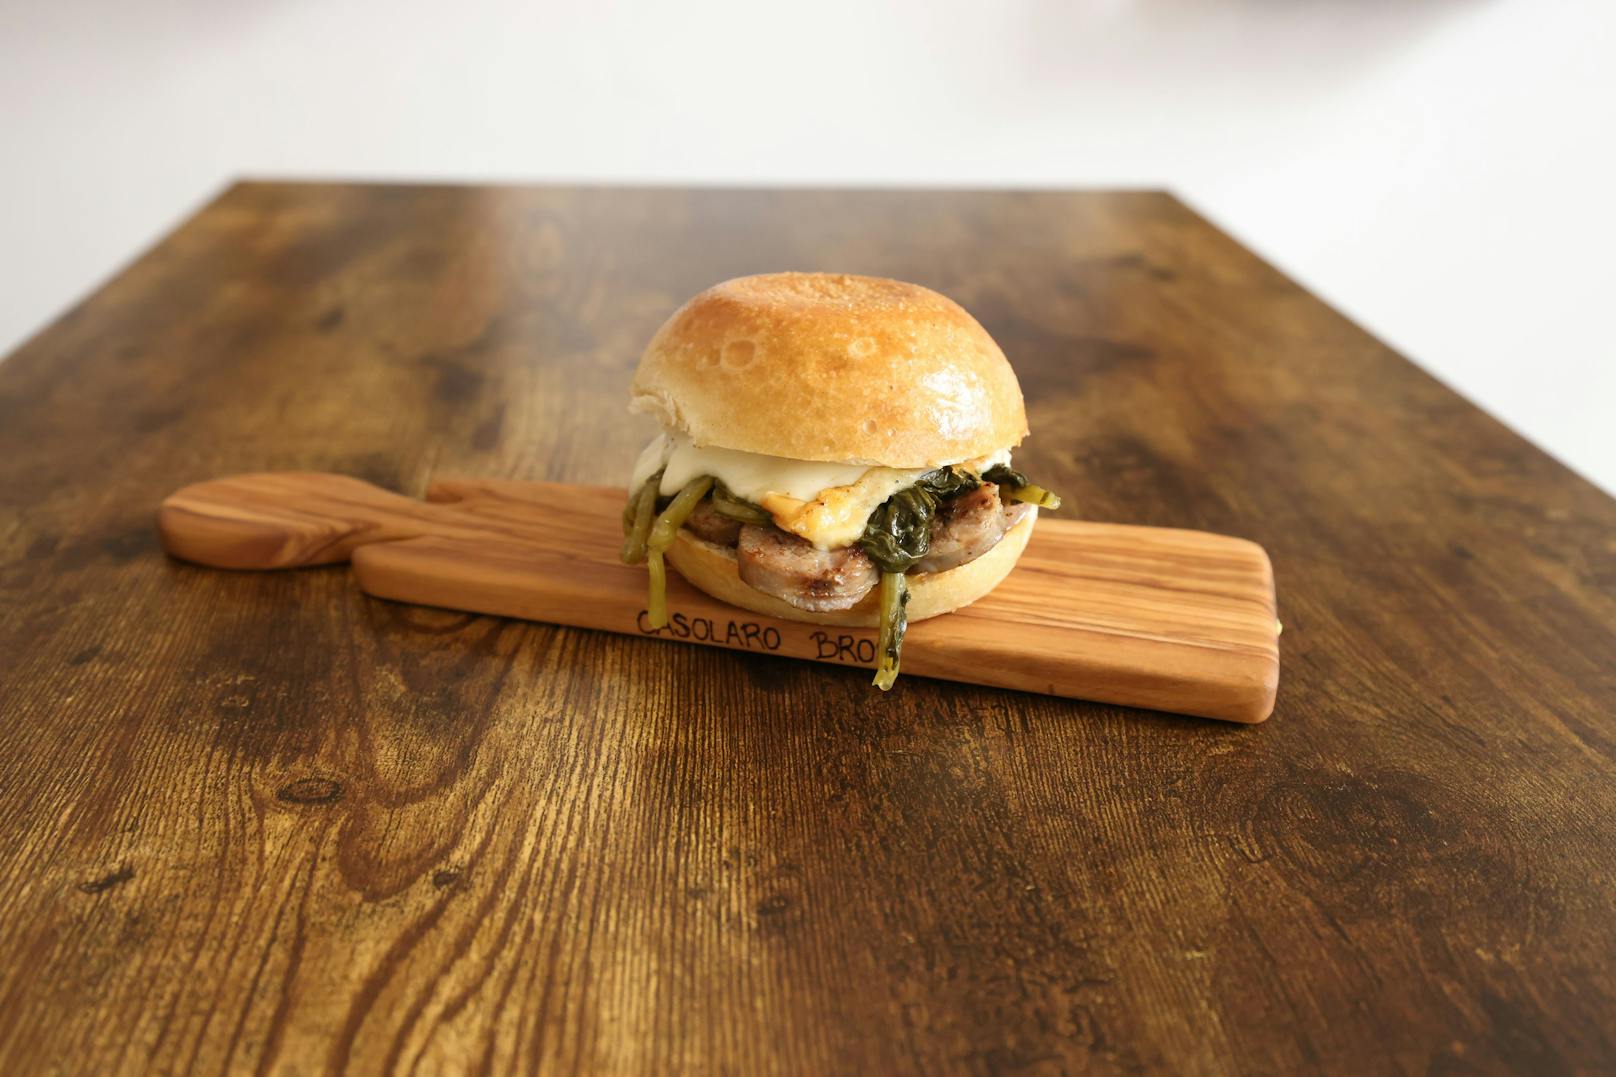 Salsiccia aus der Toskana, geräucherter Büffelmozarella (Scamorza) und Friarielli Brokkoli aus Neapel stecken in diesem Burger Bun.